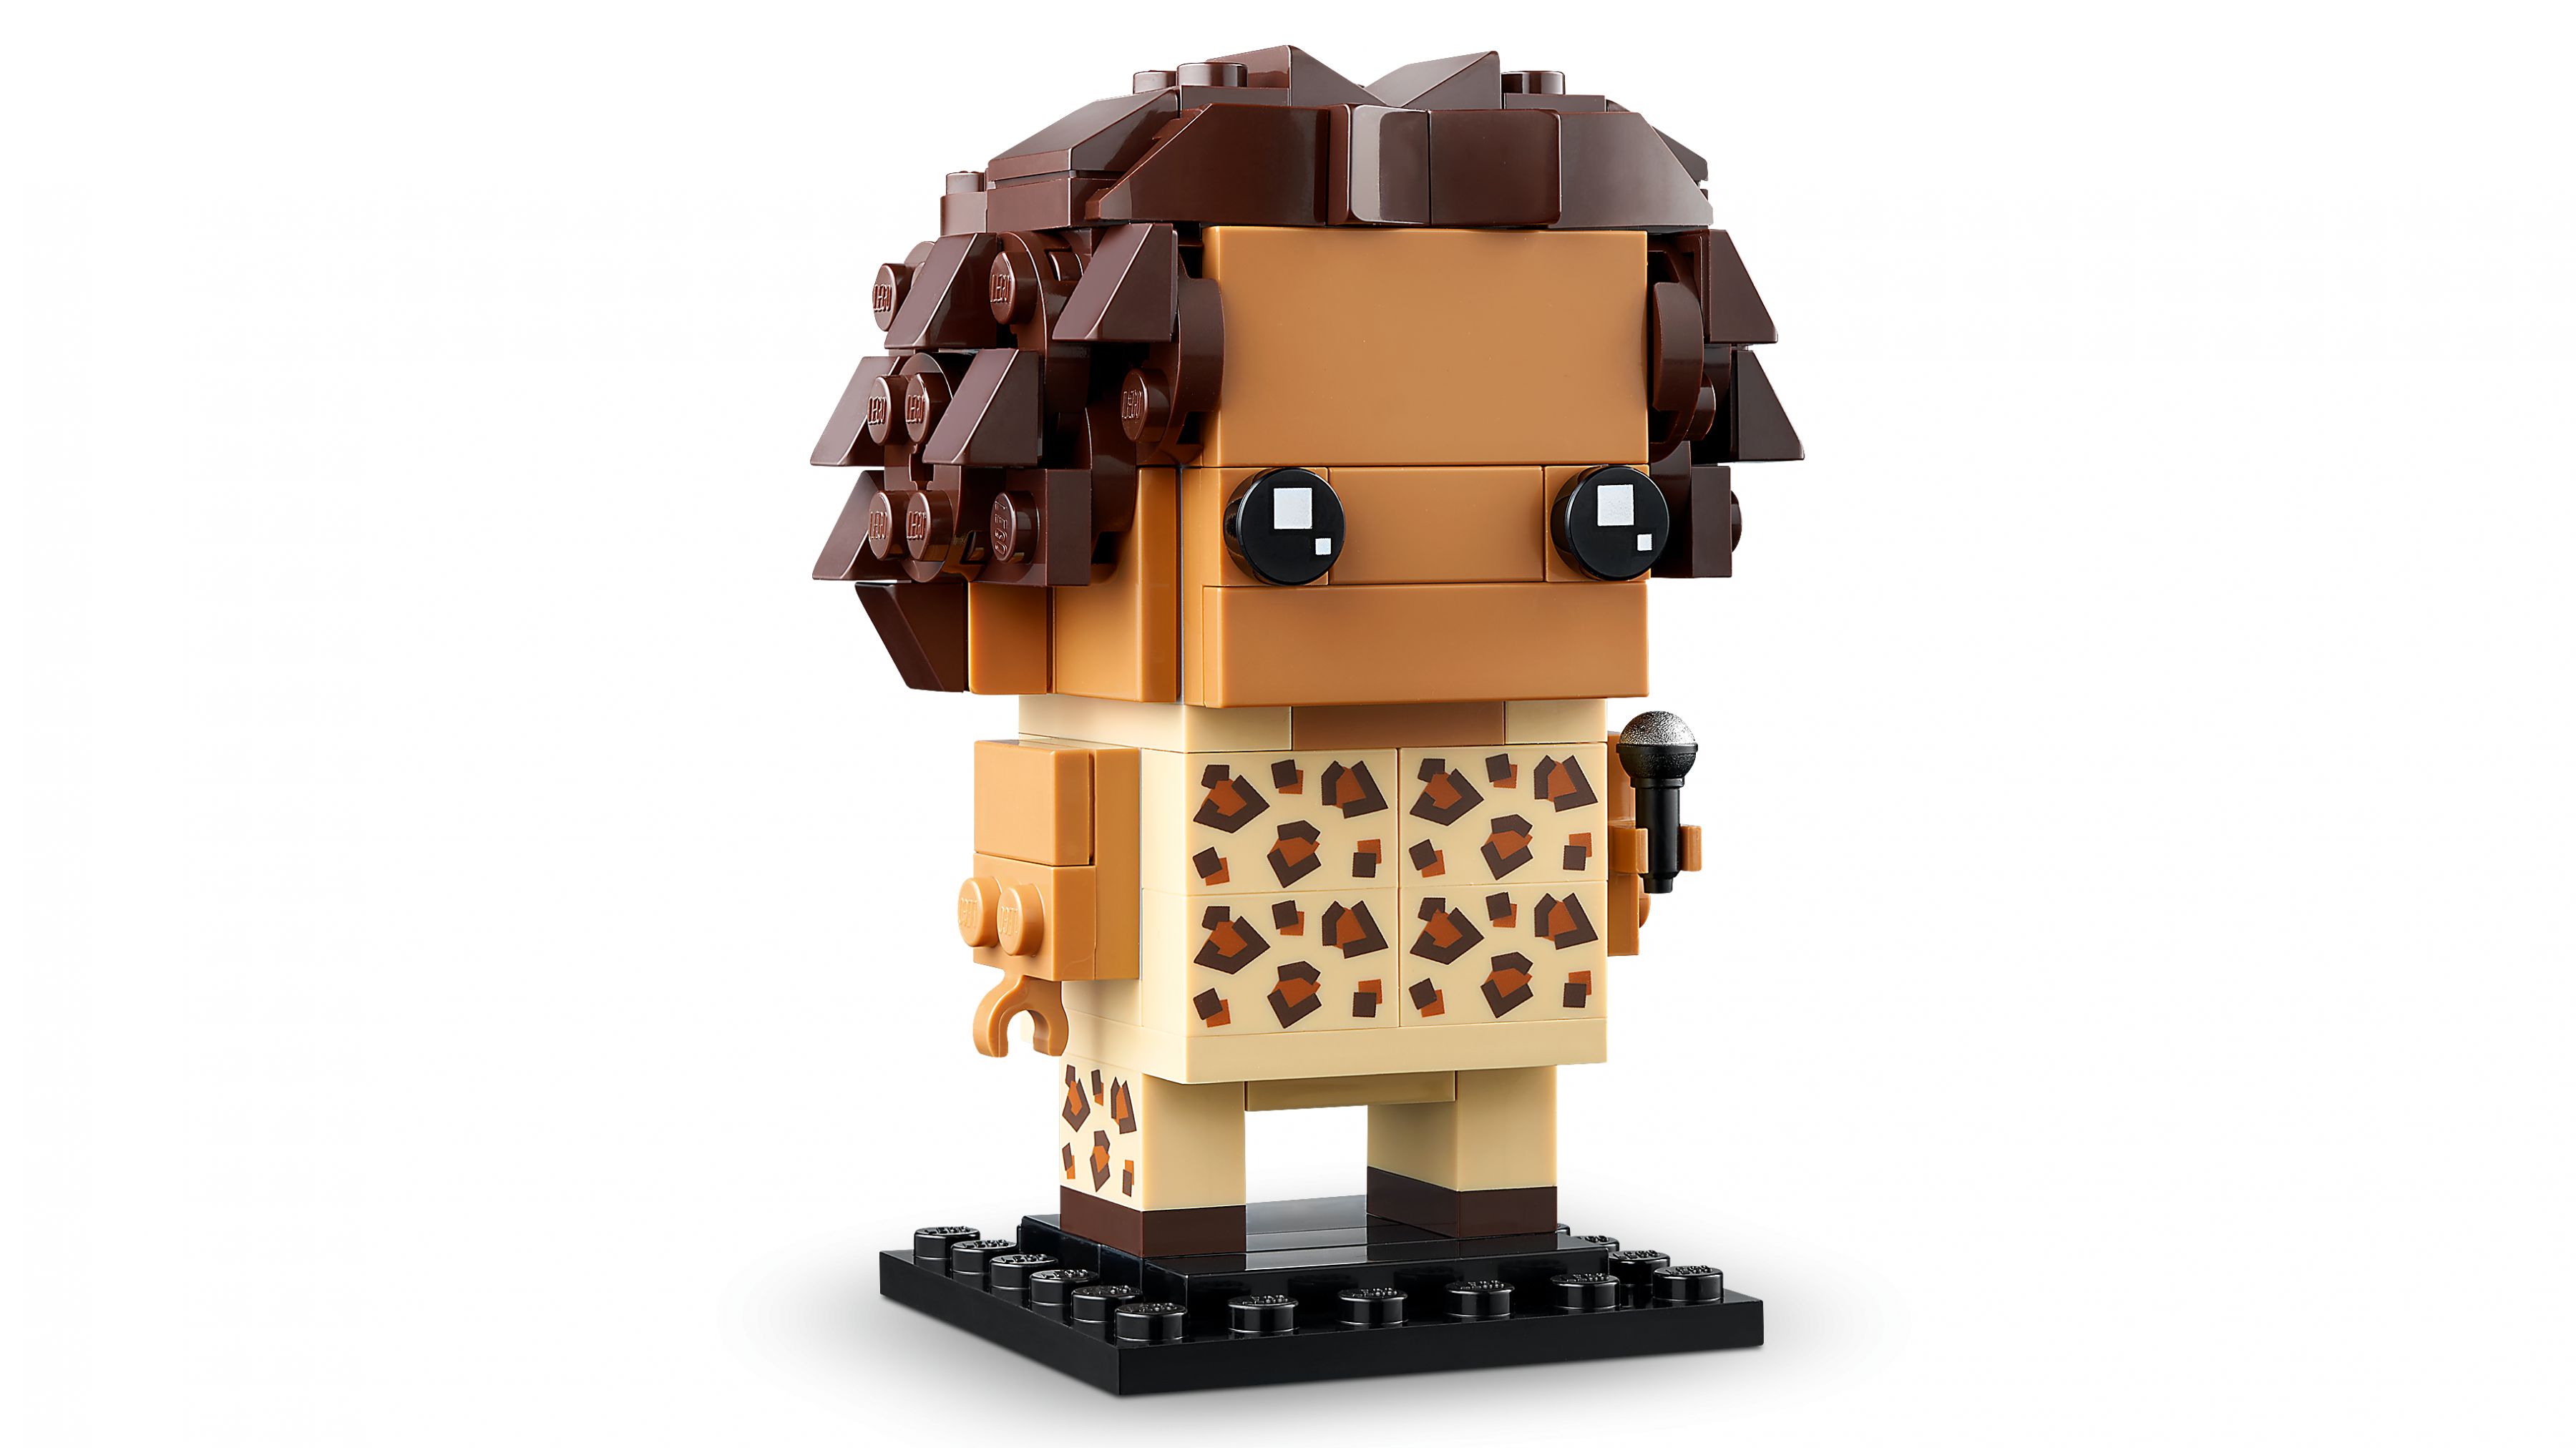 LEGO BrickHeadz 40548 Hommage an die Spice Girls LEGO_40548_WEB_SEC01_NOBG.jpg